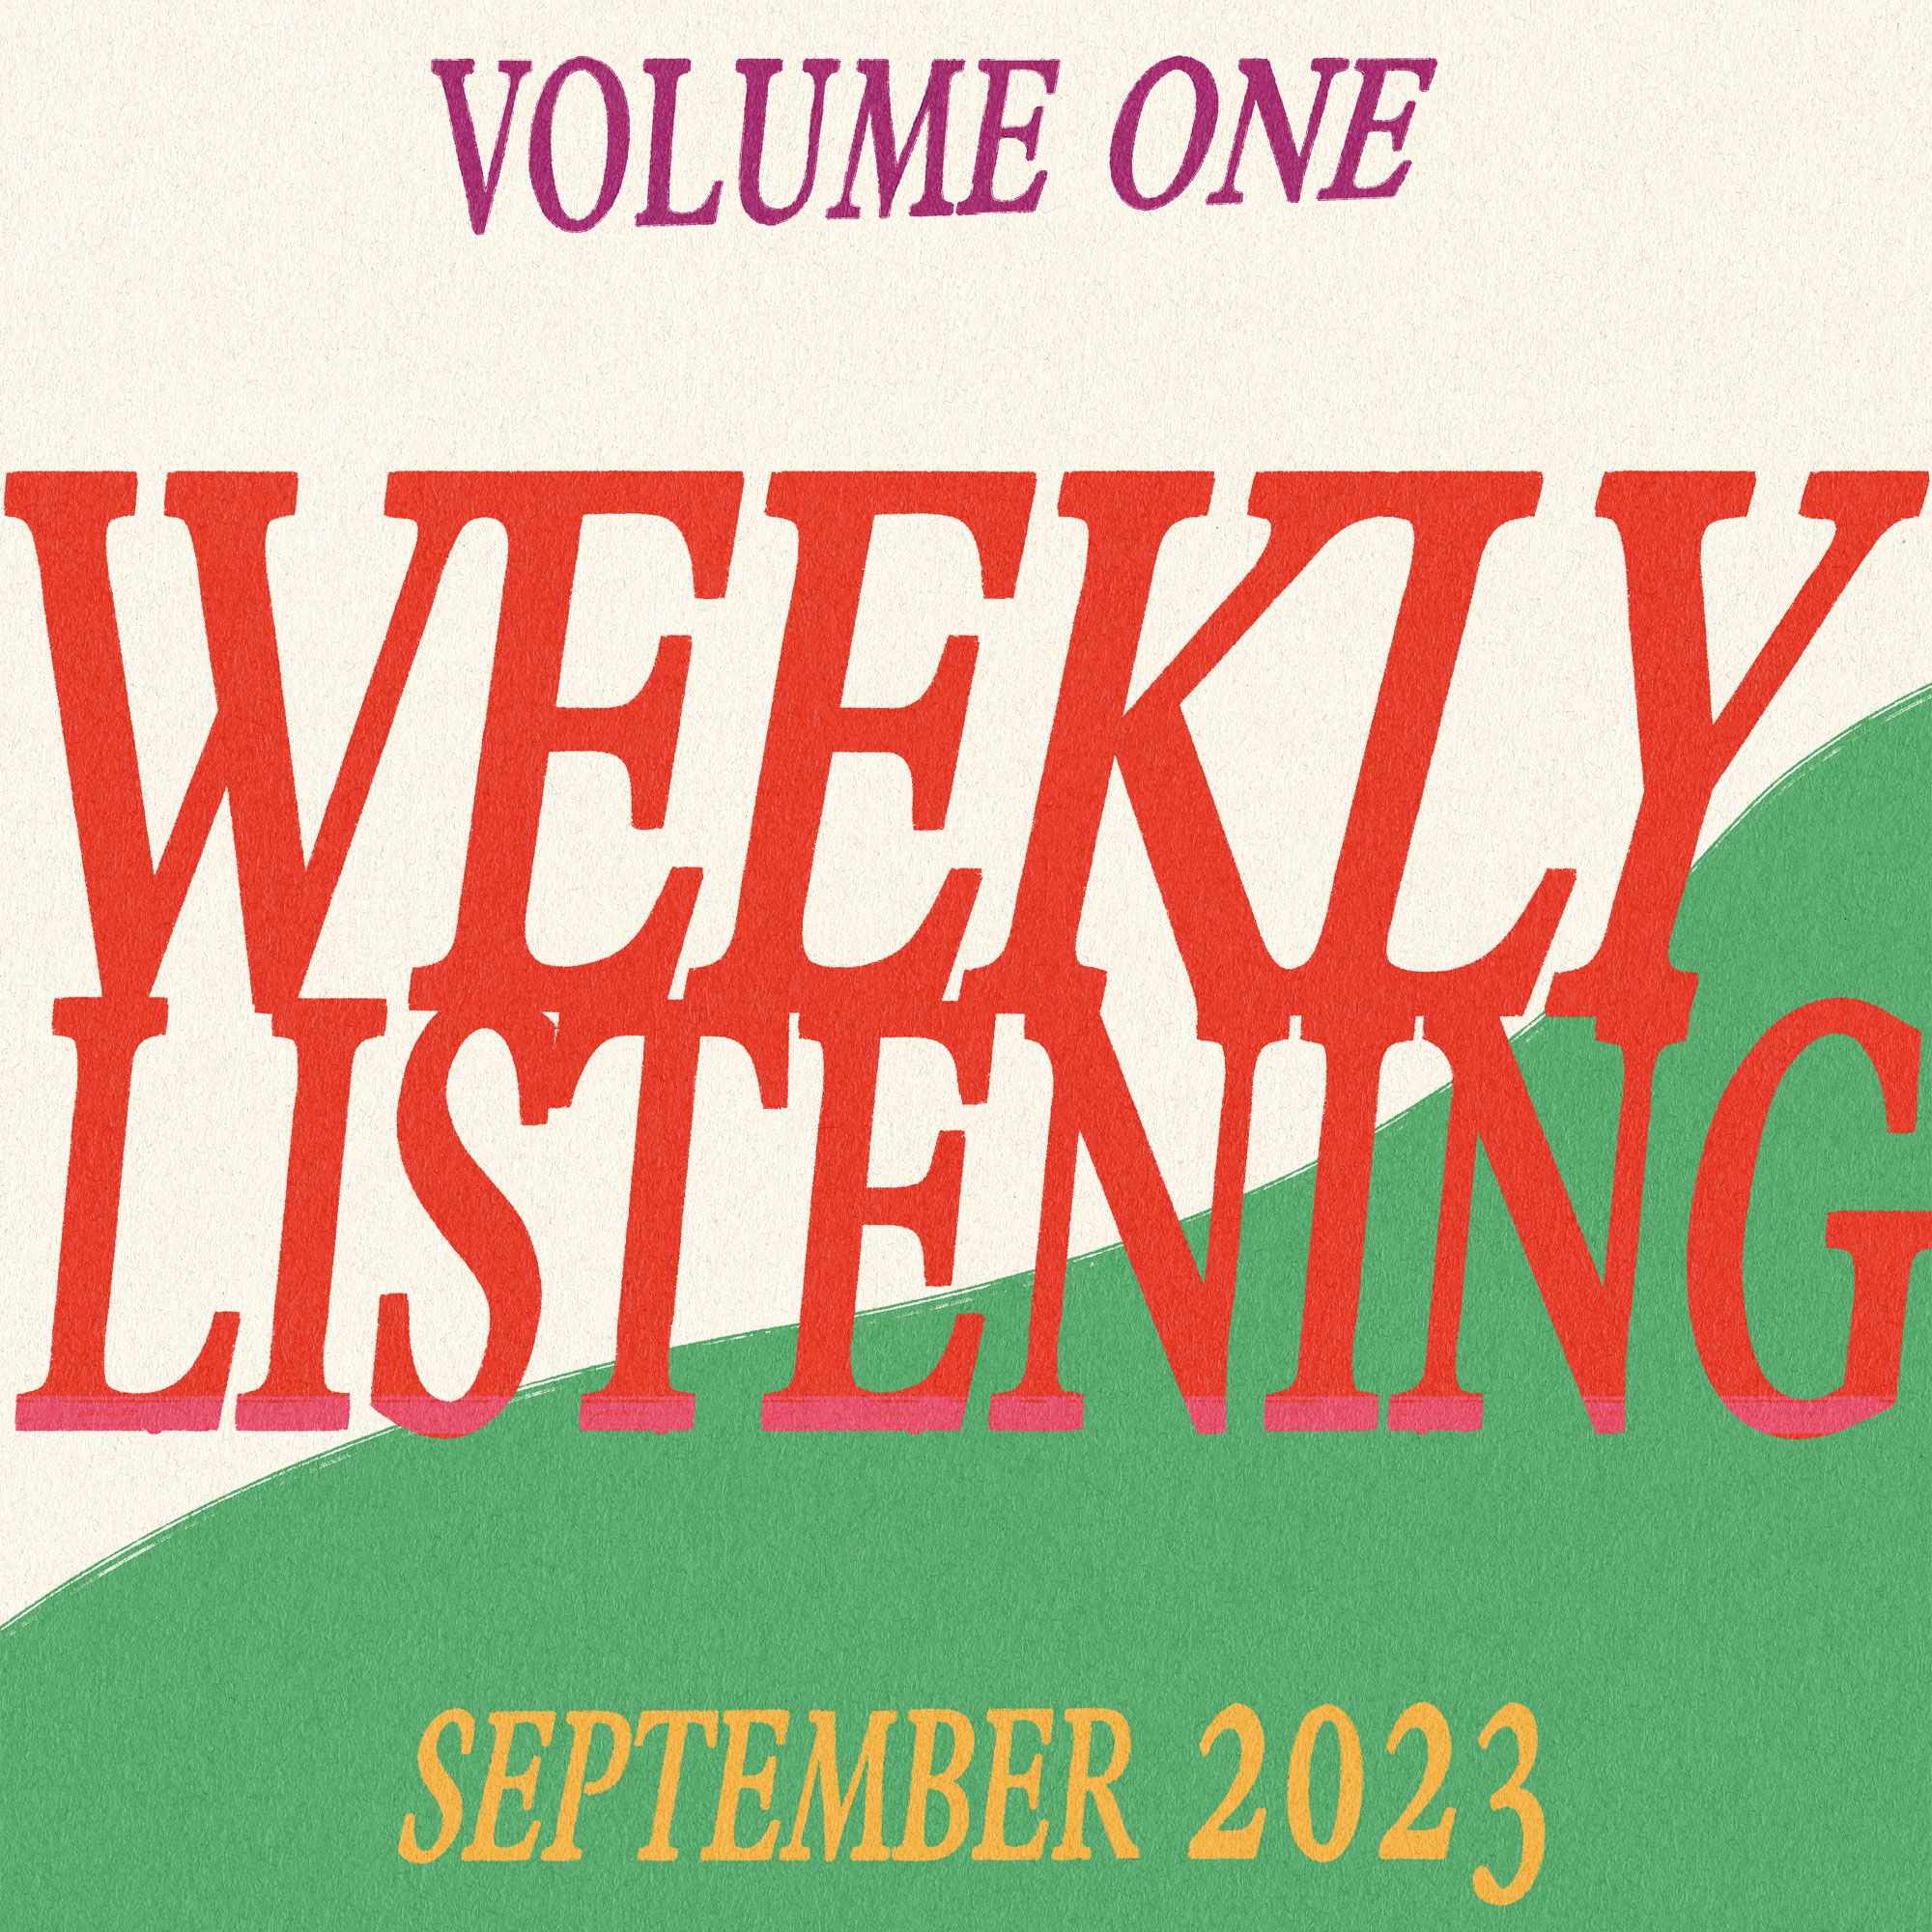 weekly listening september 2023 volume 1